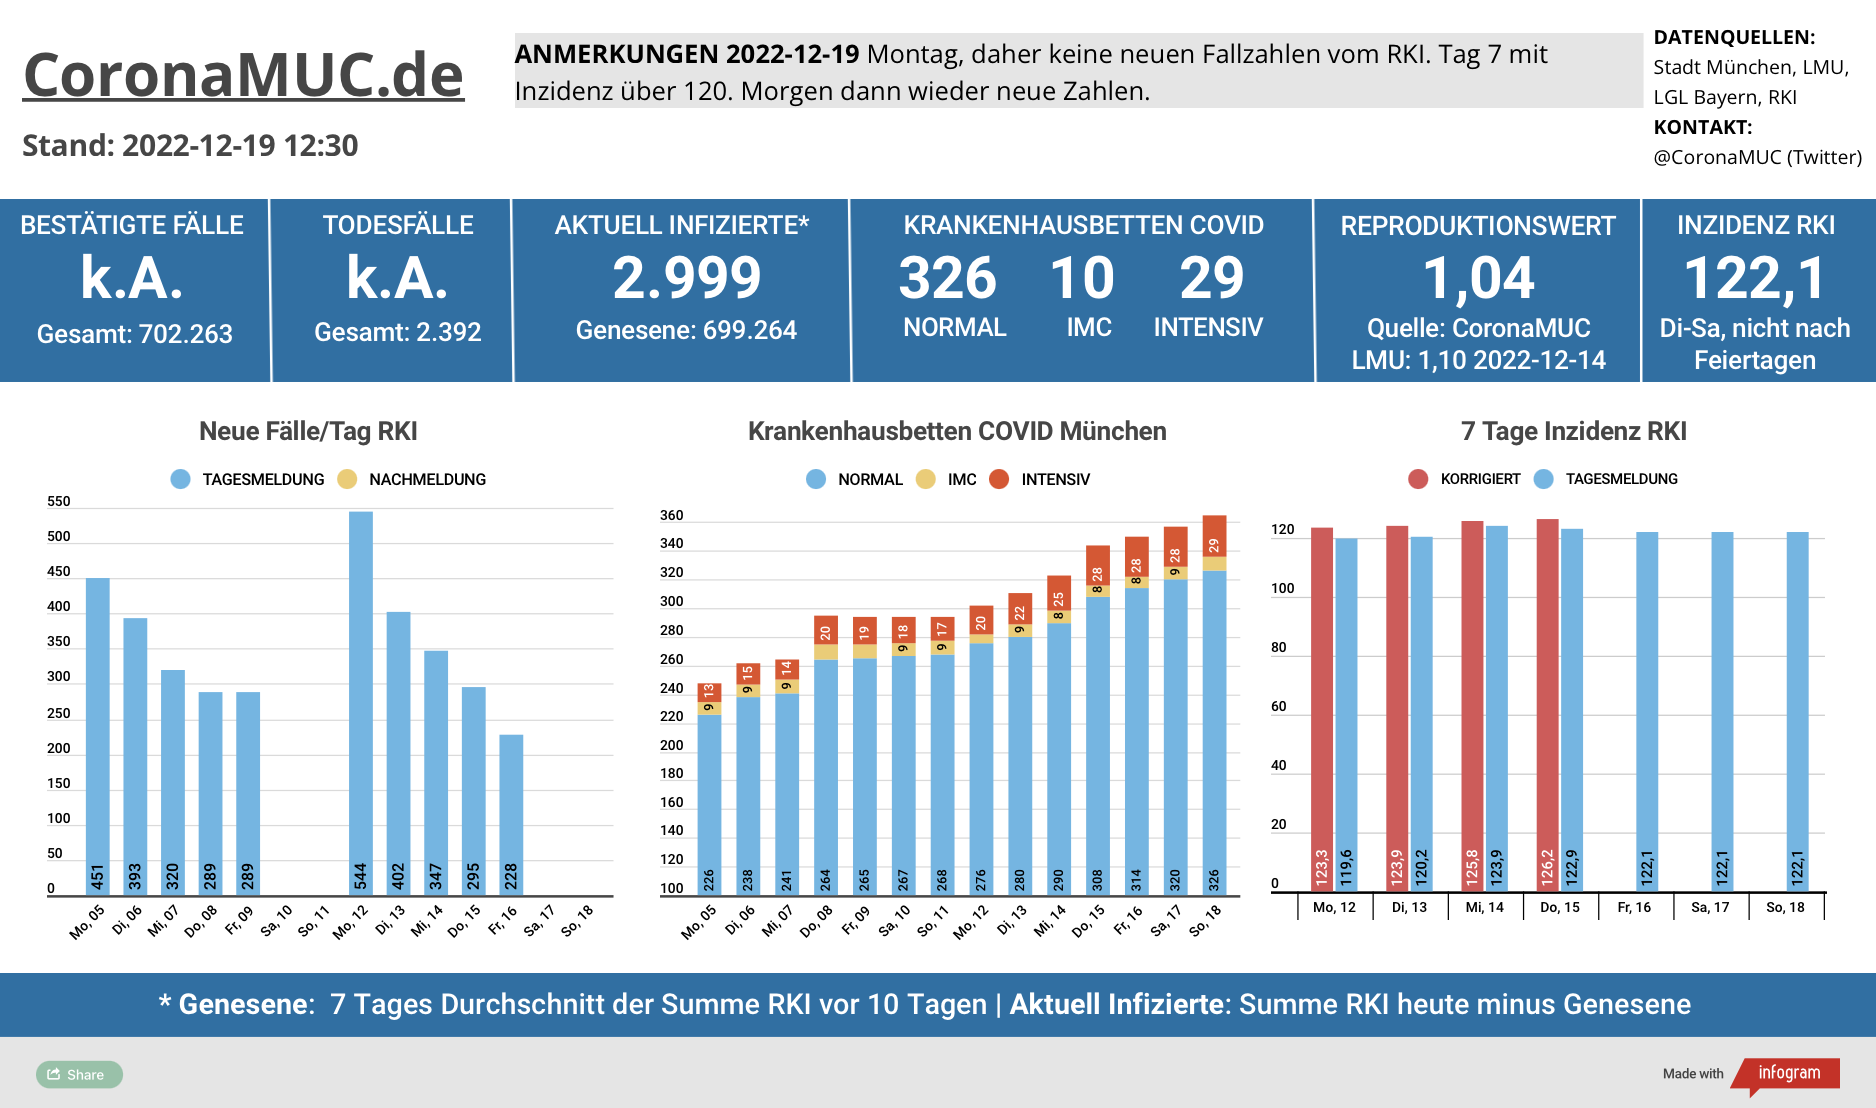 2022-12-19 Dashboard mit den Zahlen für München. Drei Balkengrafiken. Erste zeigt Neu- und Nachmeldungen, im Vergleich zur Vorwoche sind die Zahlen höher, der R(t) Wert sinkt ein wenig auf 1,04. Zweite zeigt Krankenbetten, die weiter steigen. Dritte zeigt Inzidenz, die seit 7 Tagen über 120 liegt.